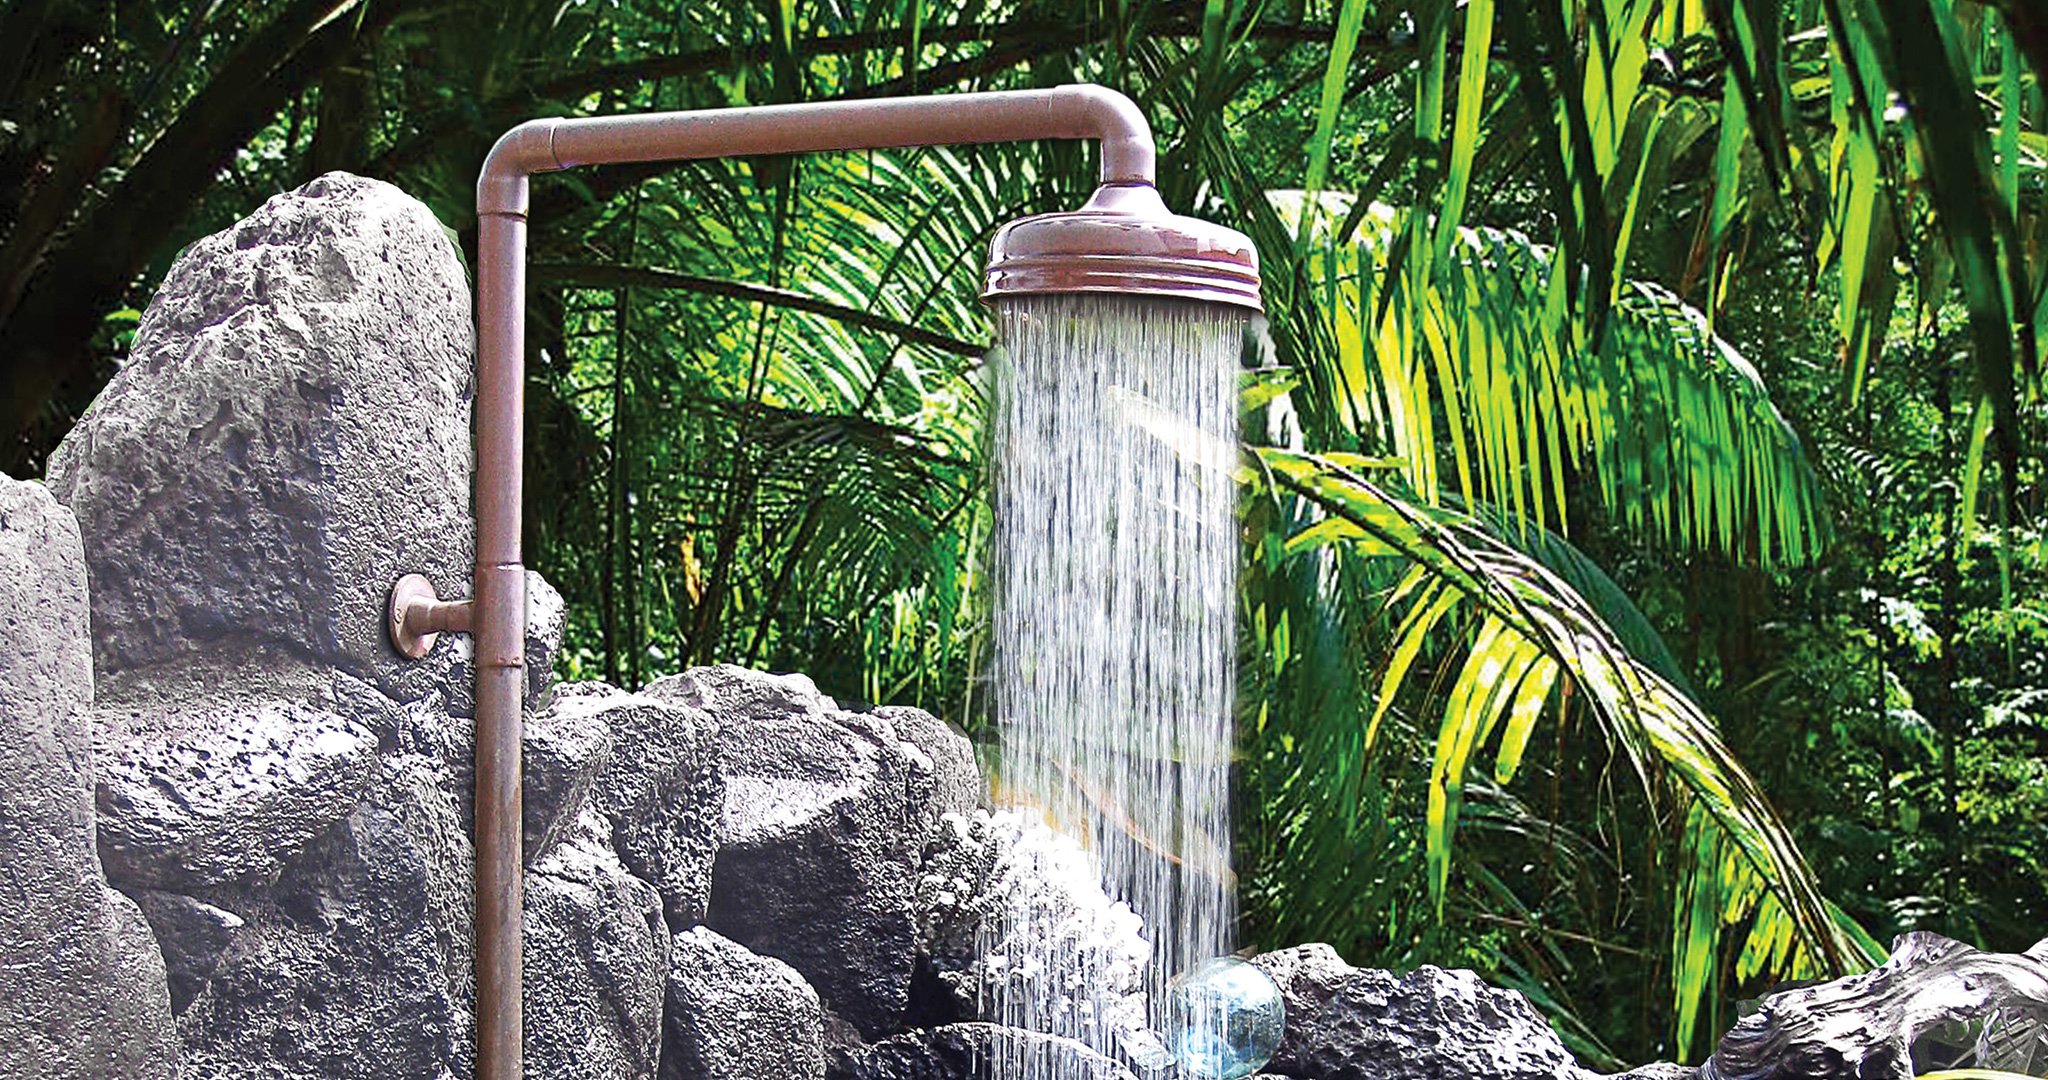 outdoor shower water